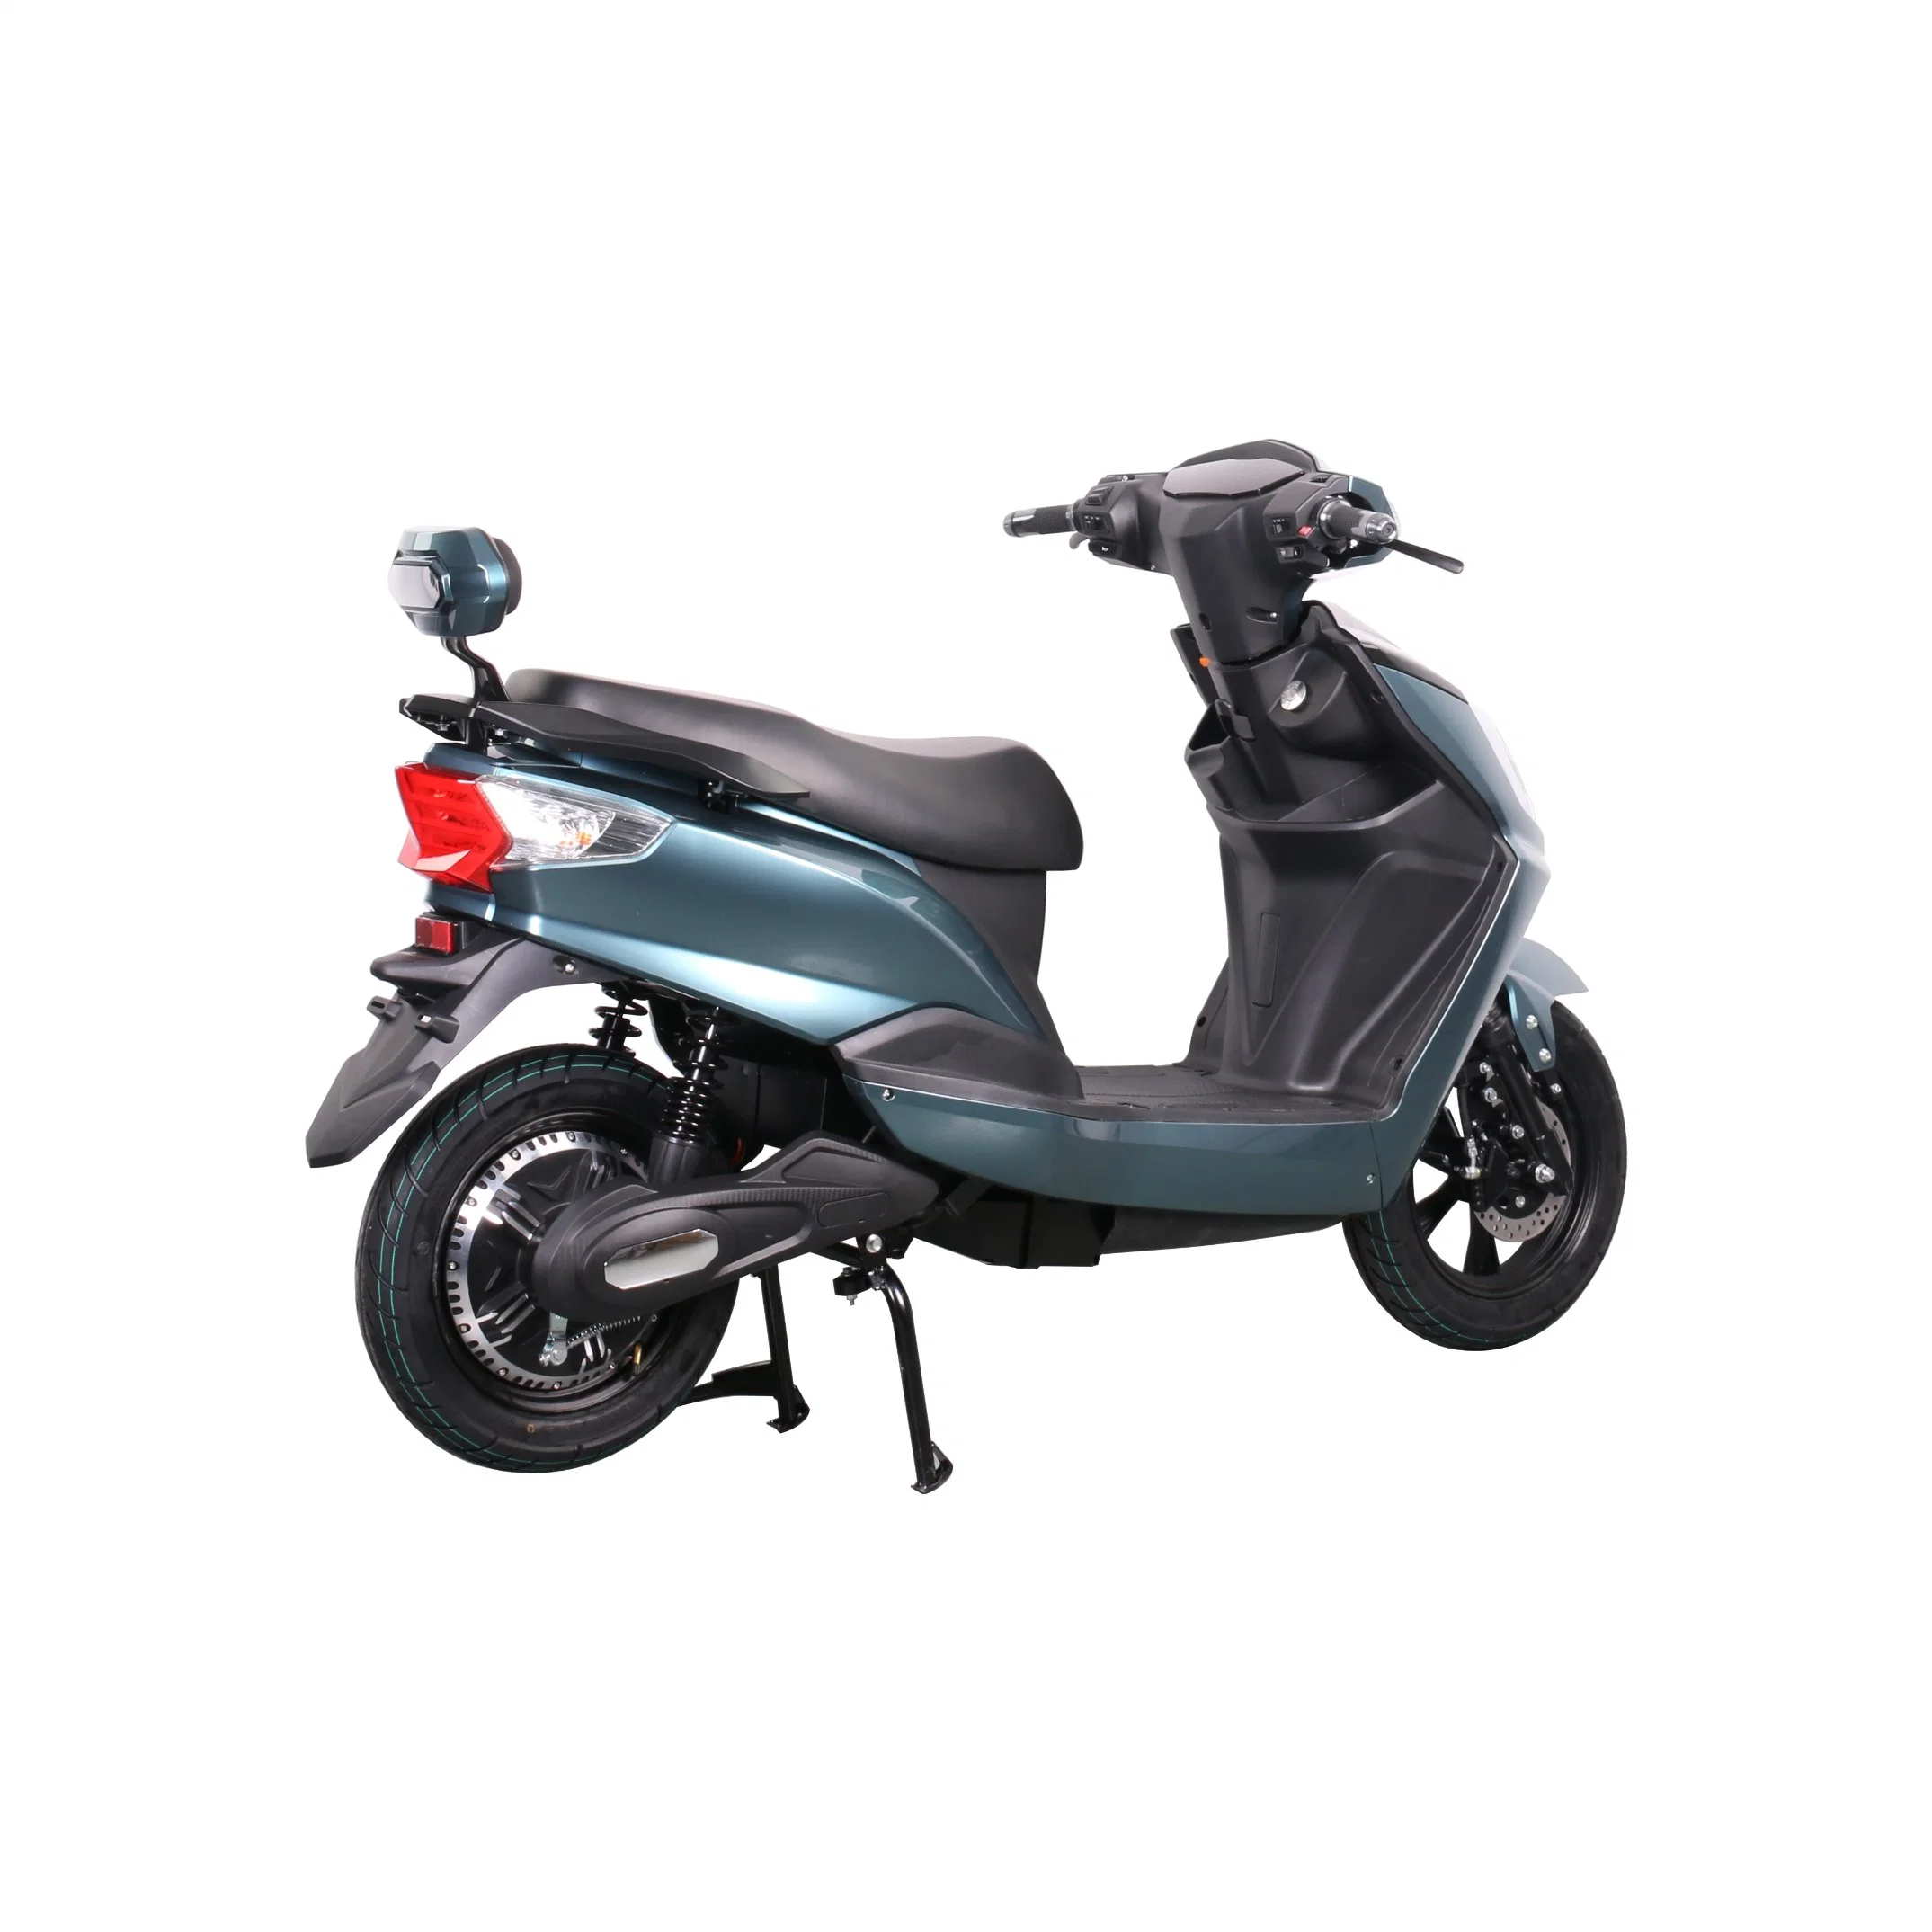 Tourwe CEE patente Modelo popular E-Bike scooter eléctrico de motocicleta